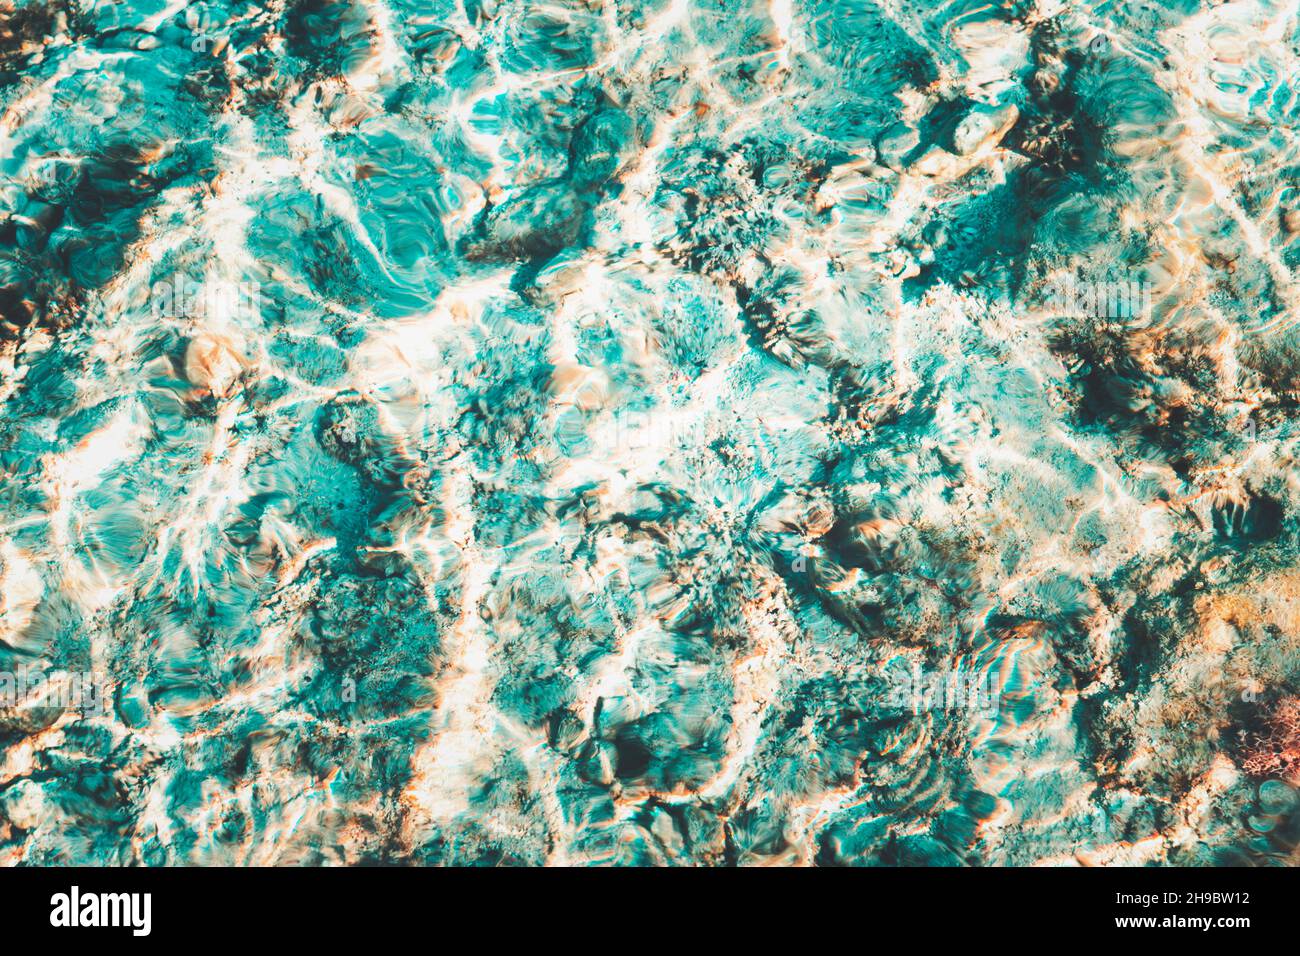 La superficie bianca blu dell'acqua lacerata con le onde e il sole bello scintilla sopra le barriere coralline Foto Stock